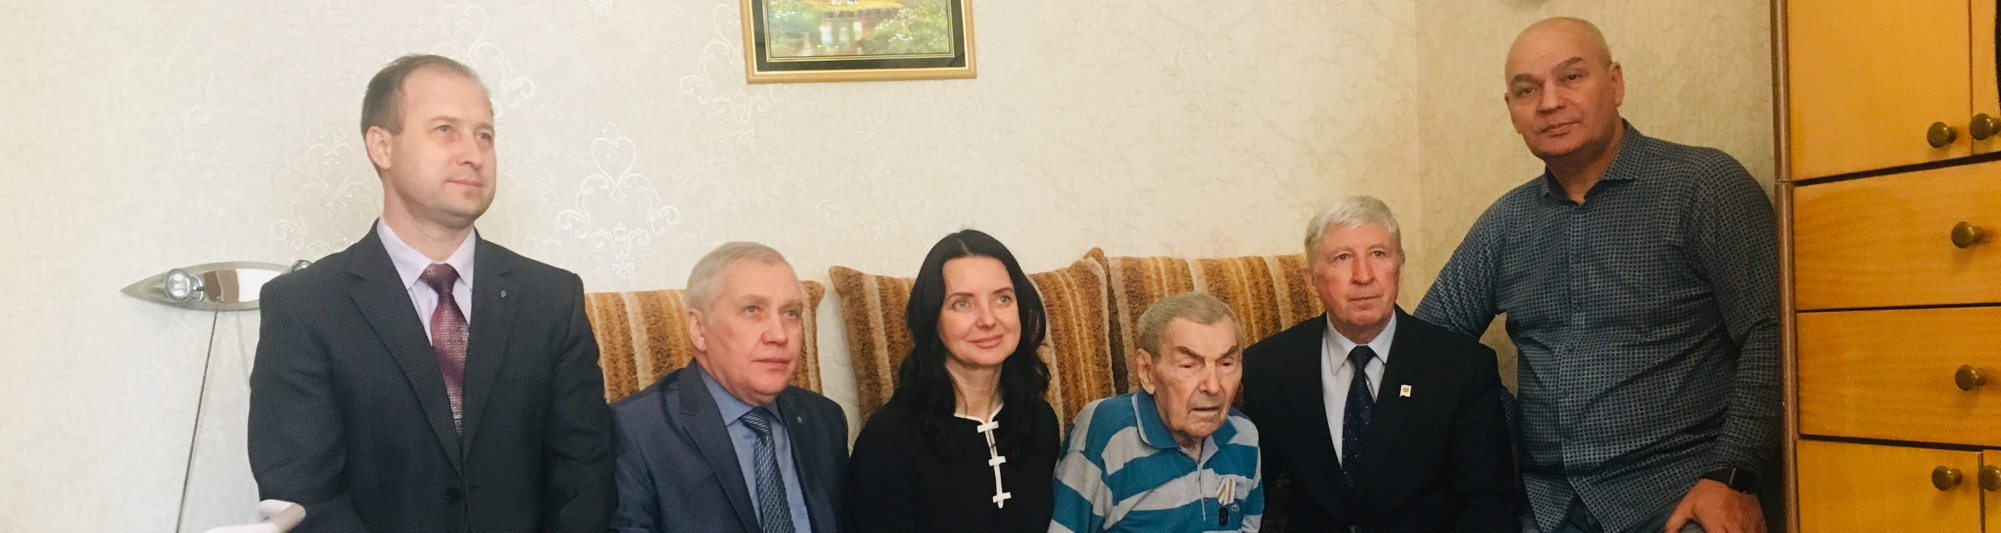 Игорь Морозов вручил ветерану юбилейную медаль «75 лет Победы»